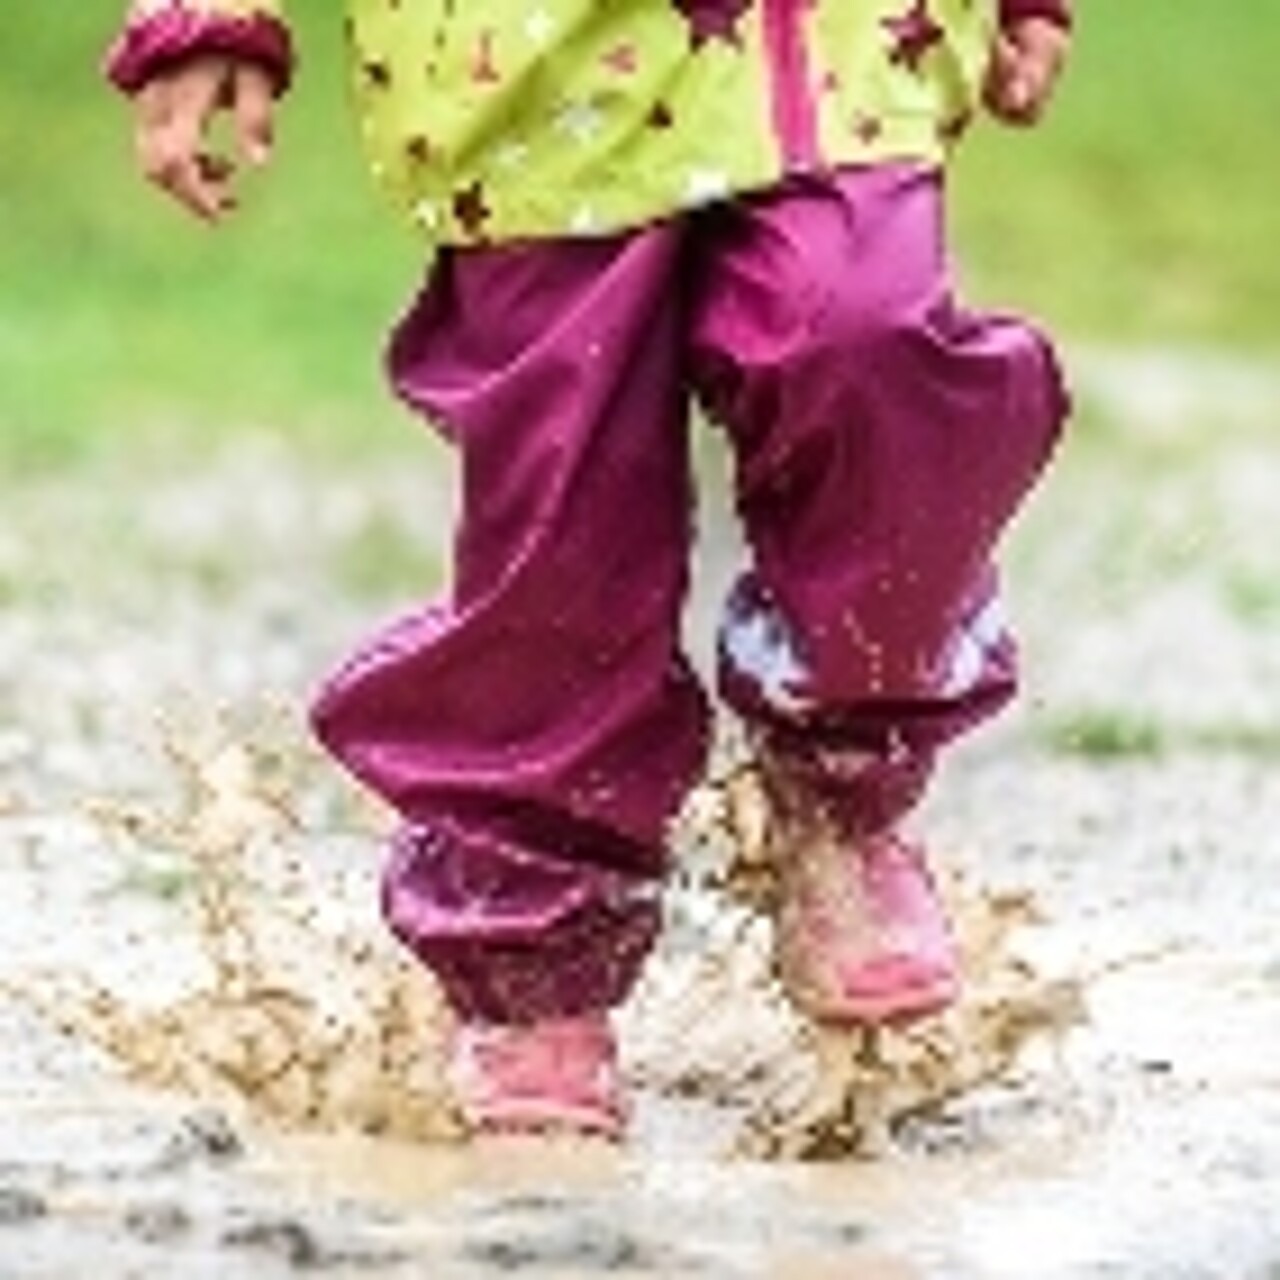 Ein Kind mit Gummistiefeln springt in eine Pfütze